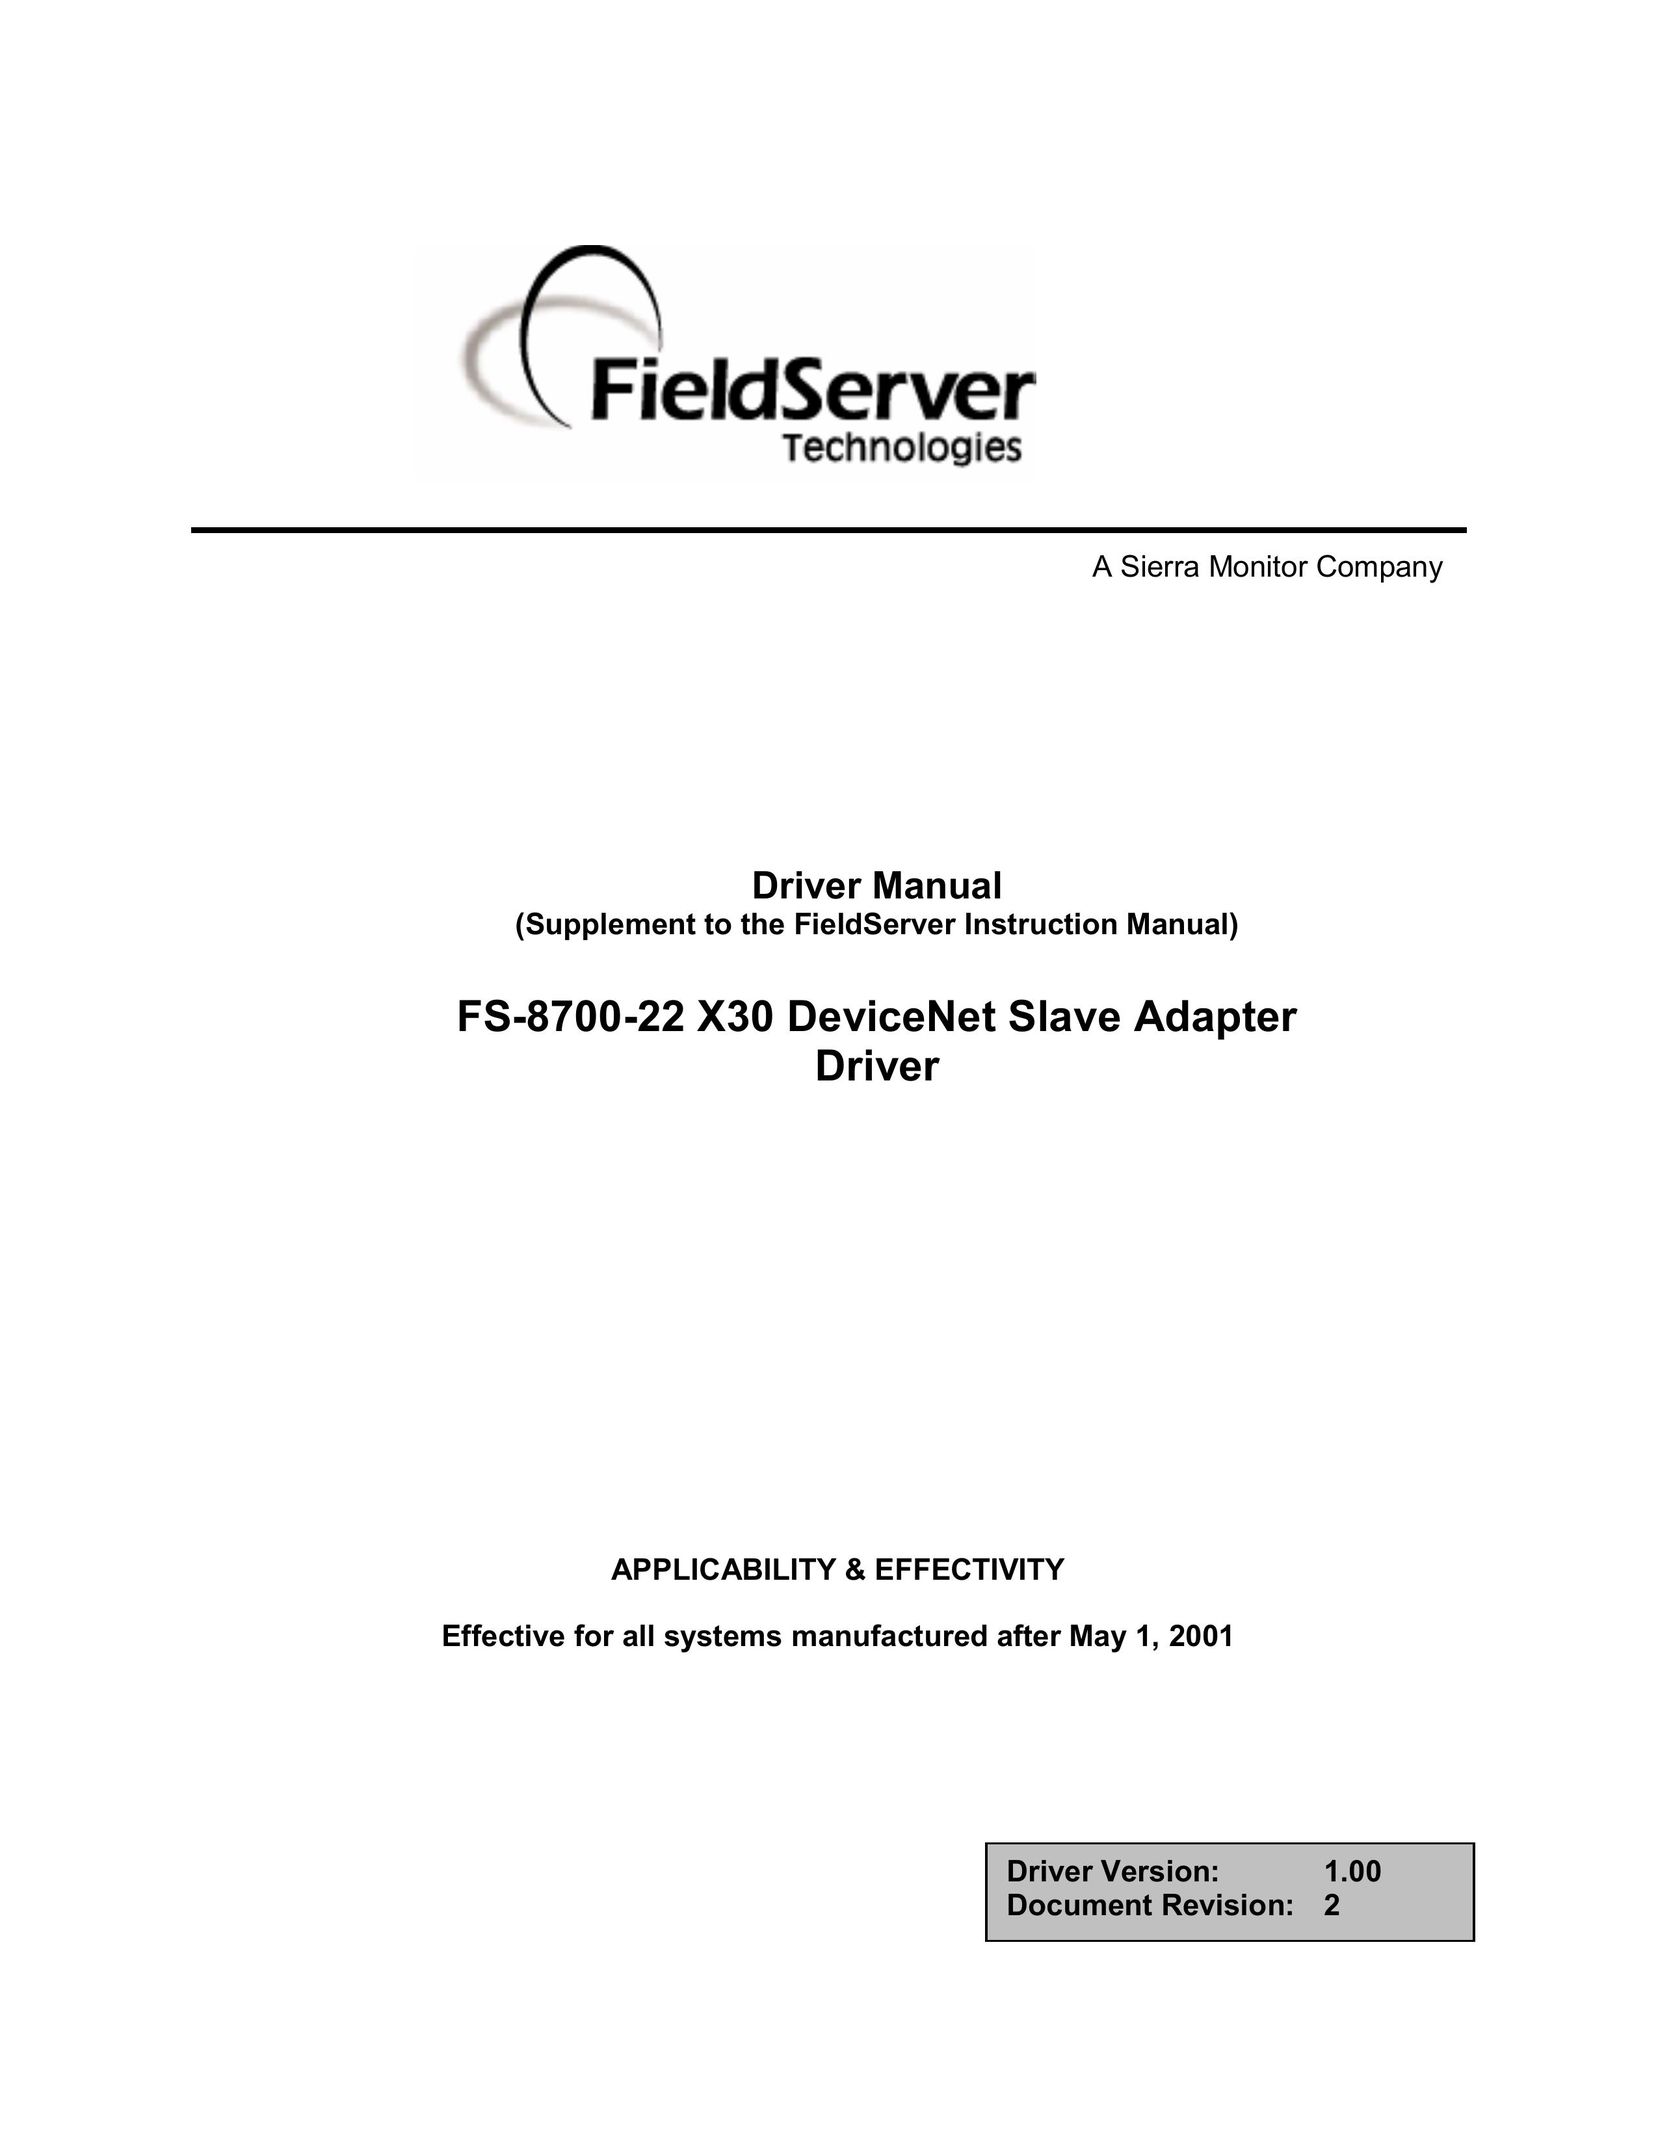 FieldServer FS-8700-22 X30 Computer Drive User Manual